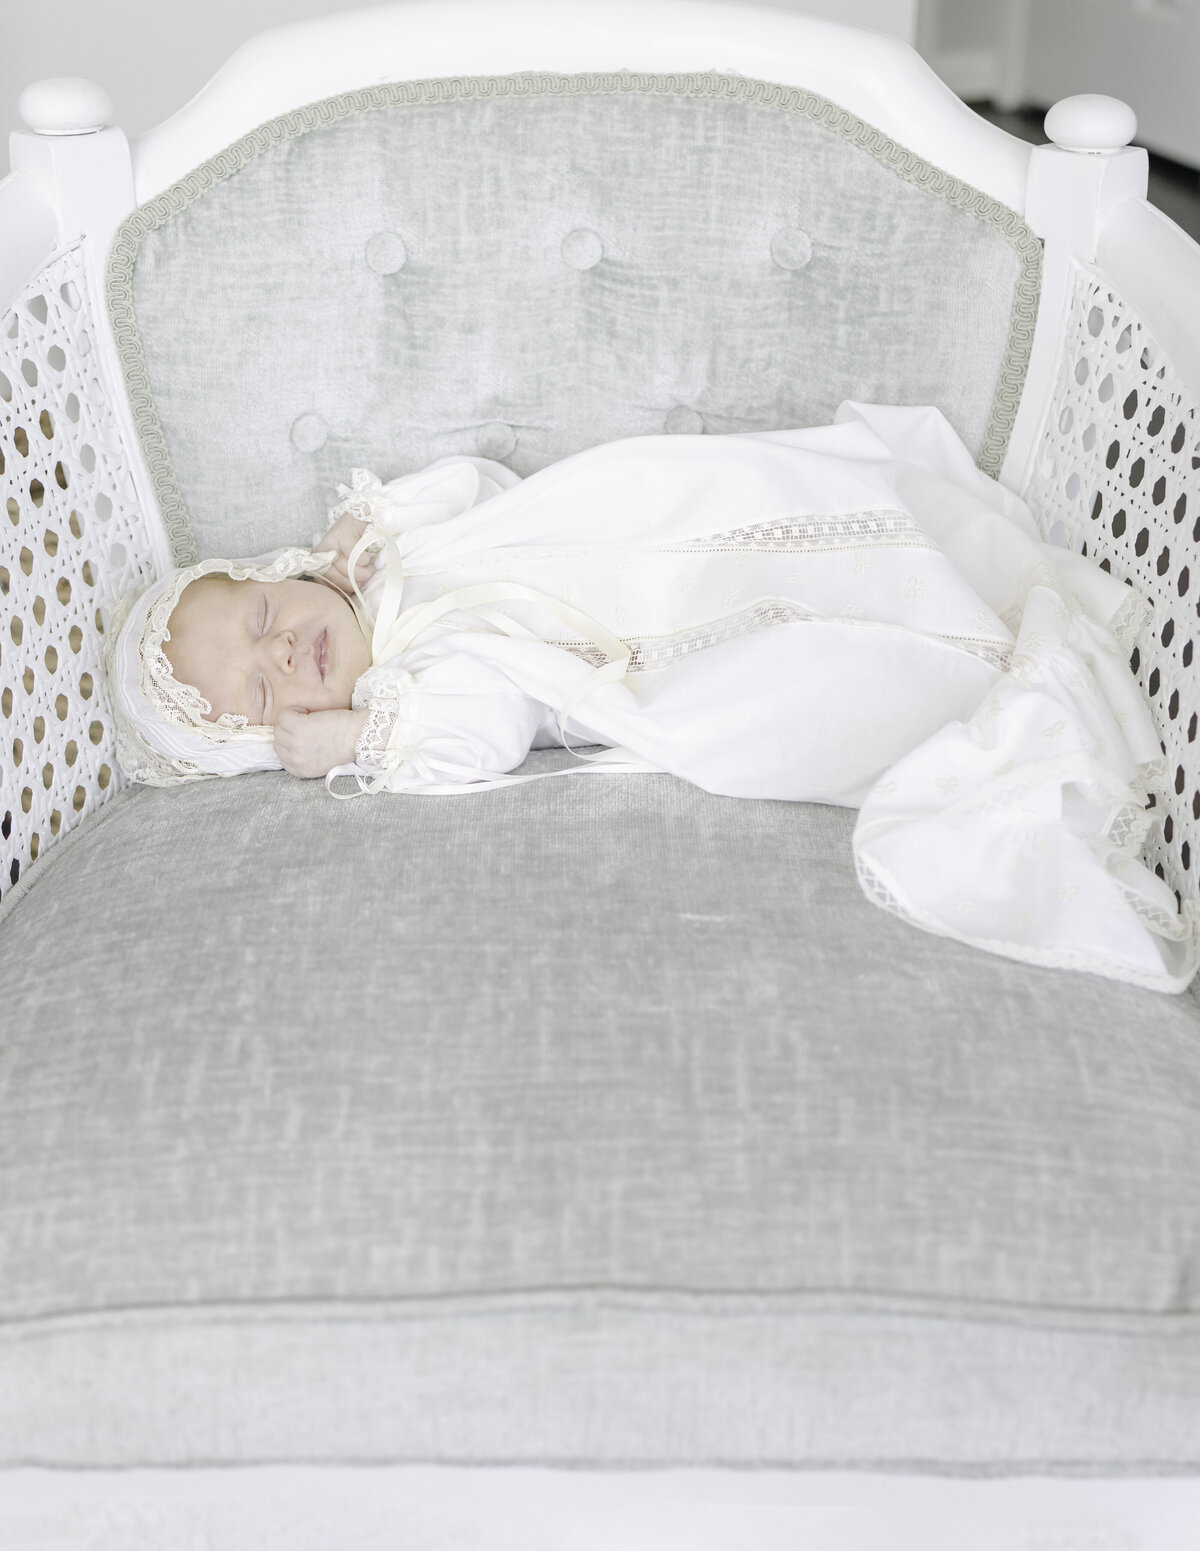 Newborn baby sleeping in antique chair